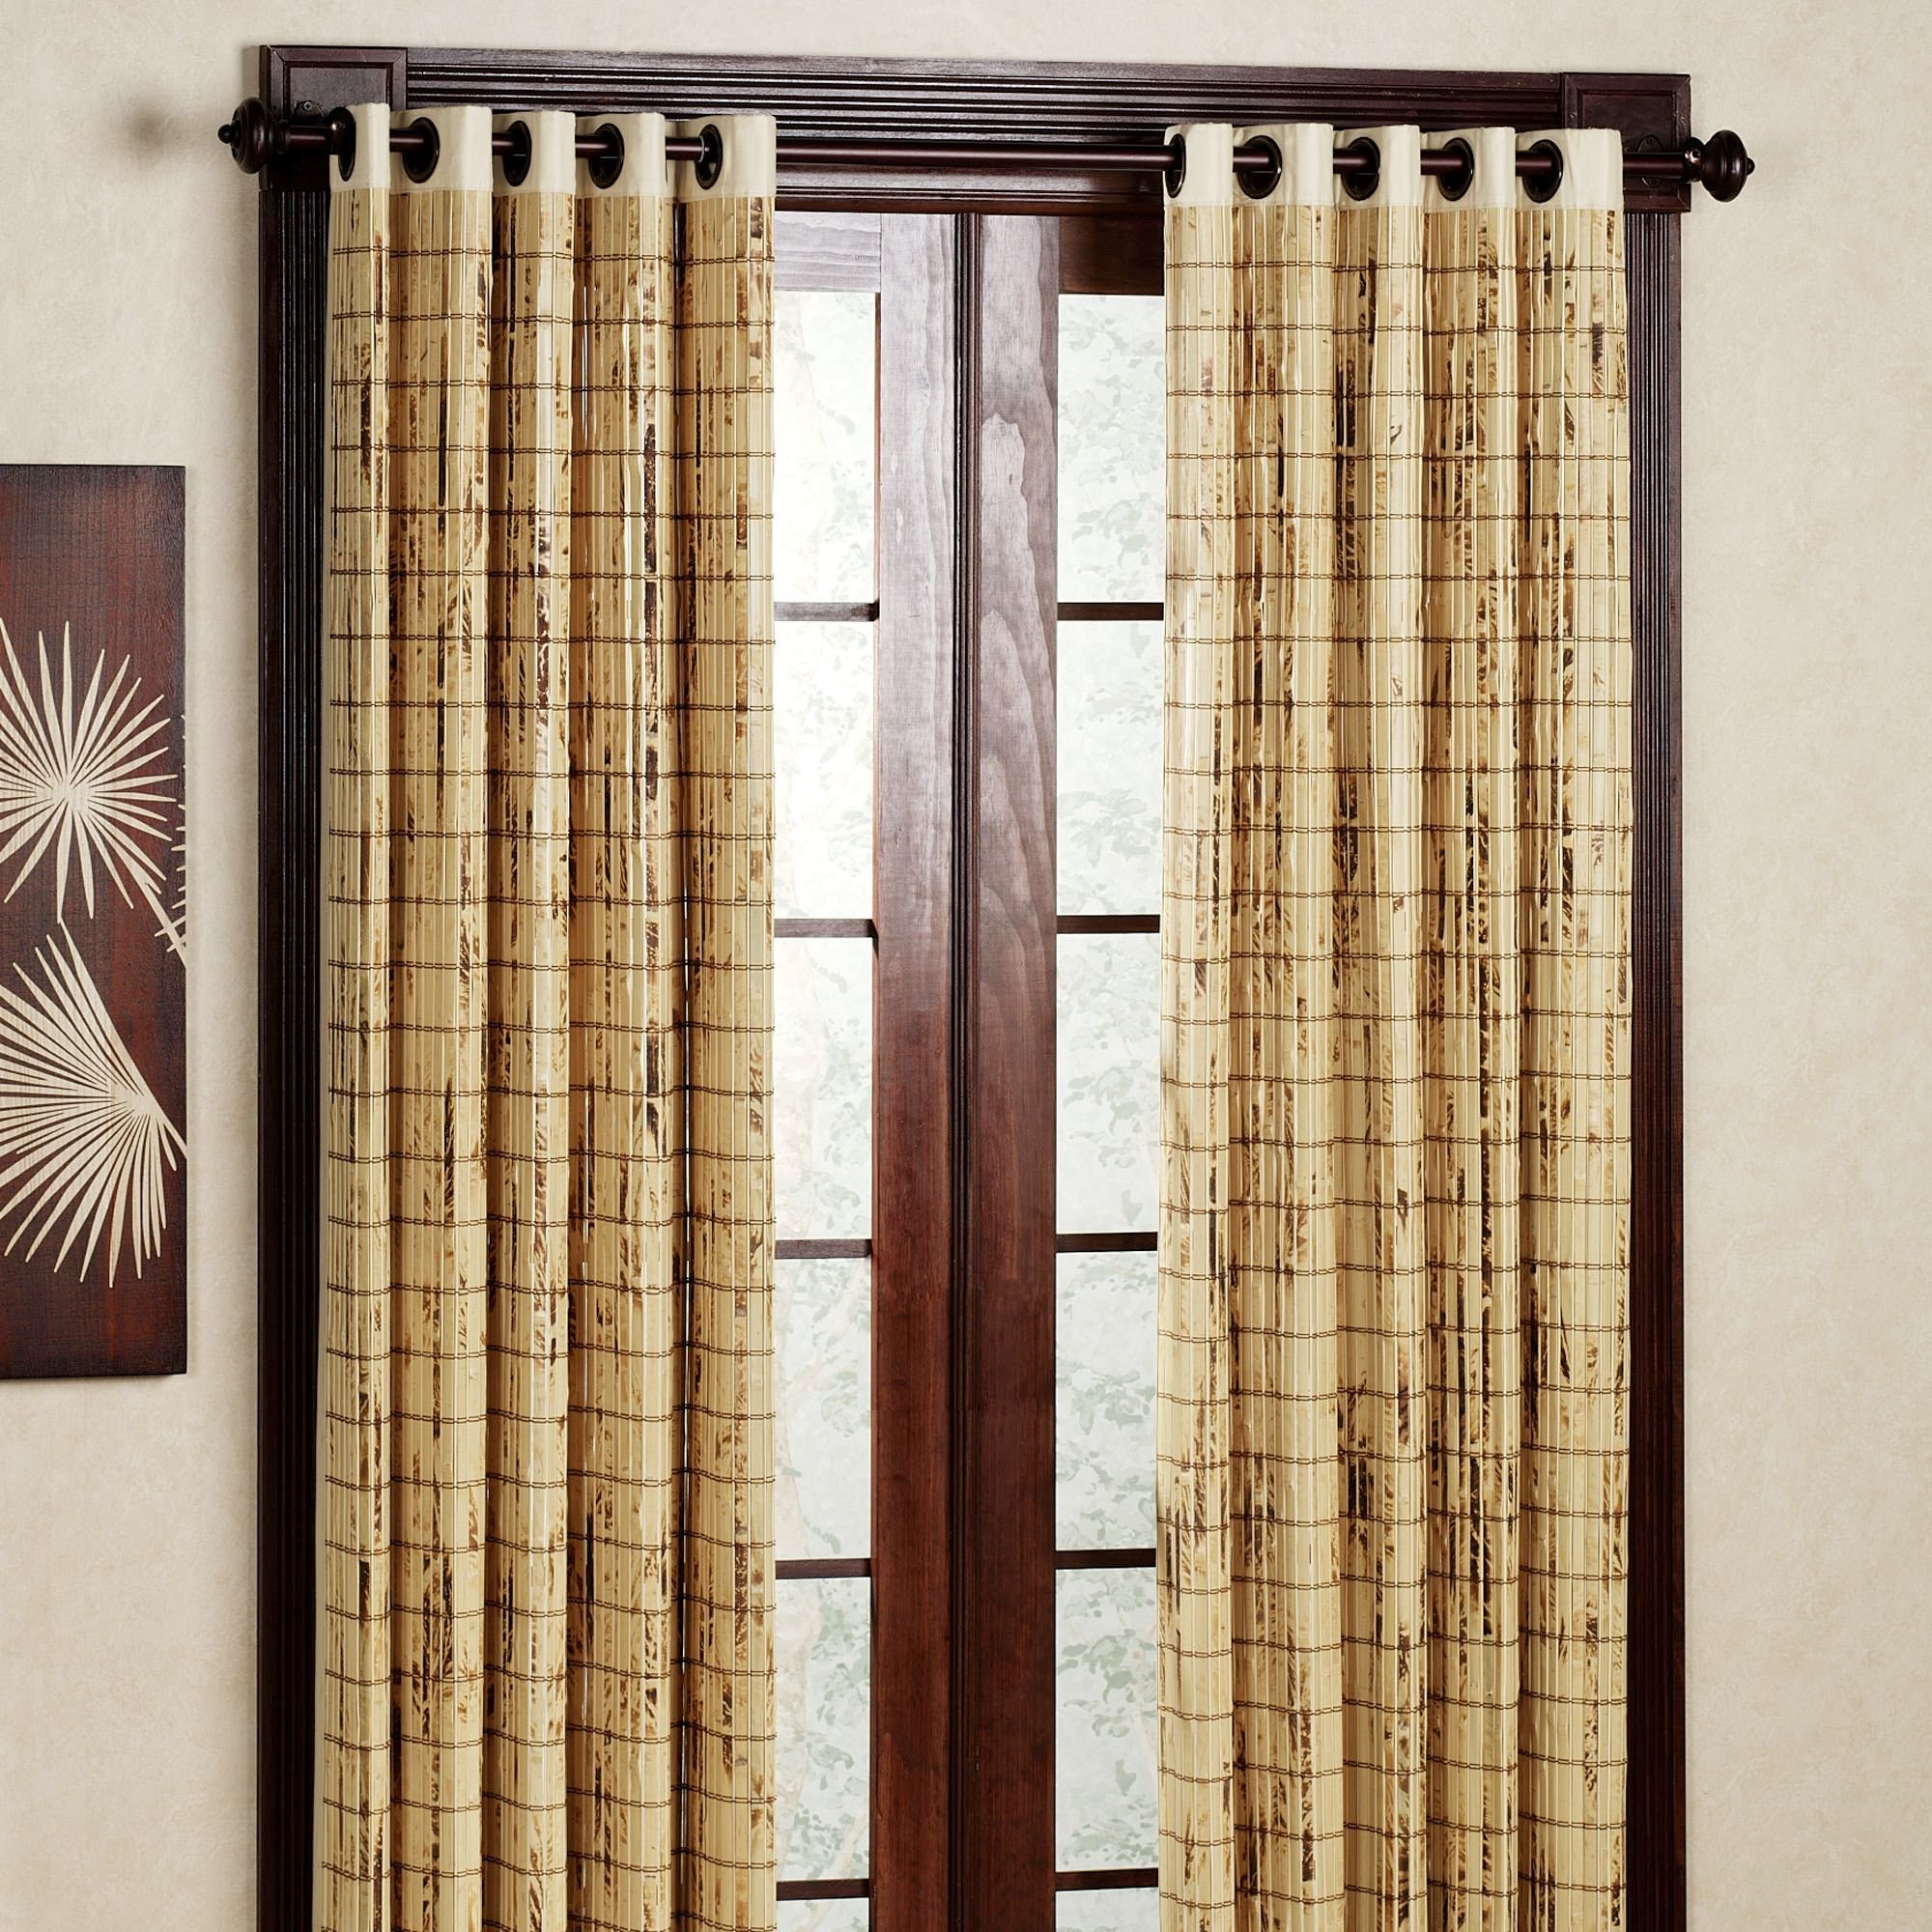 Деревянная шторка. Валберис бамбуковые шторы. Бамбуковые шторы на дверь. Шторы на дверной проем. Деревянные занавески.